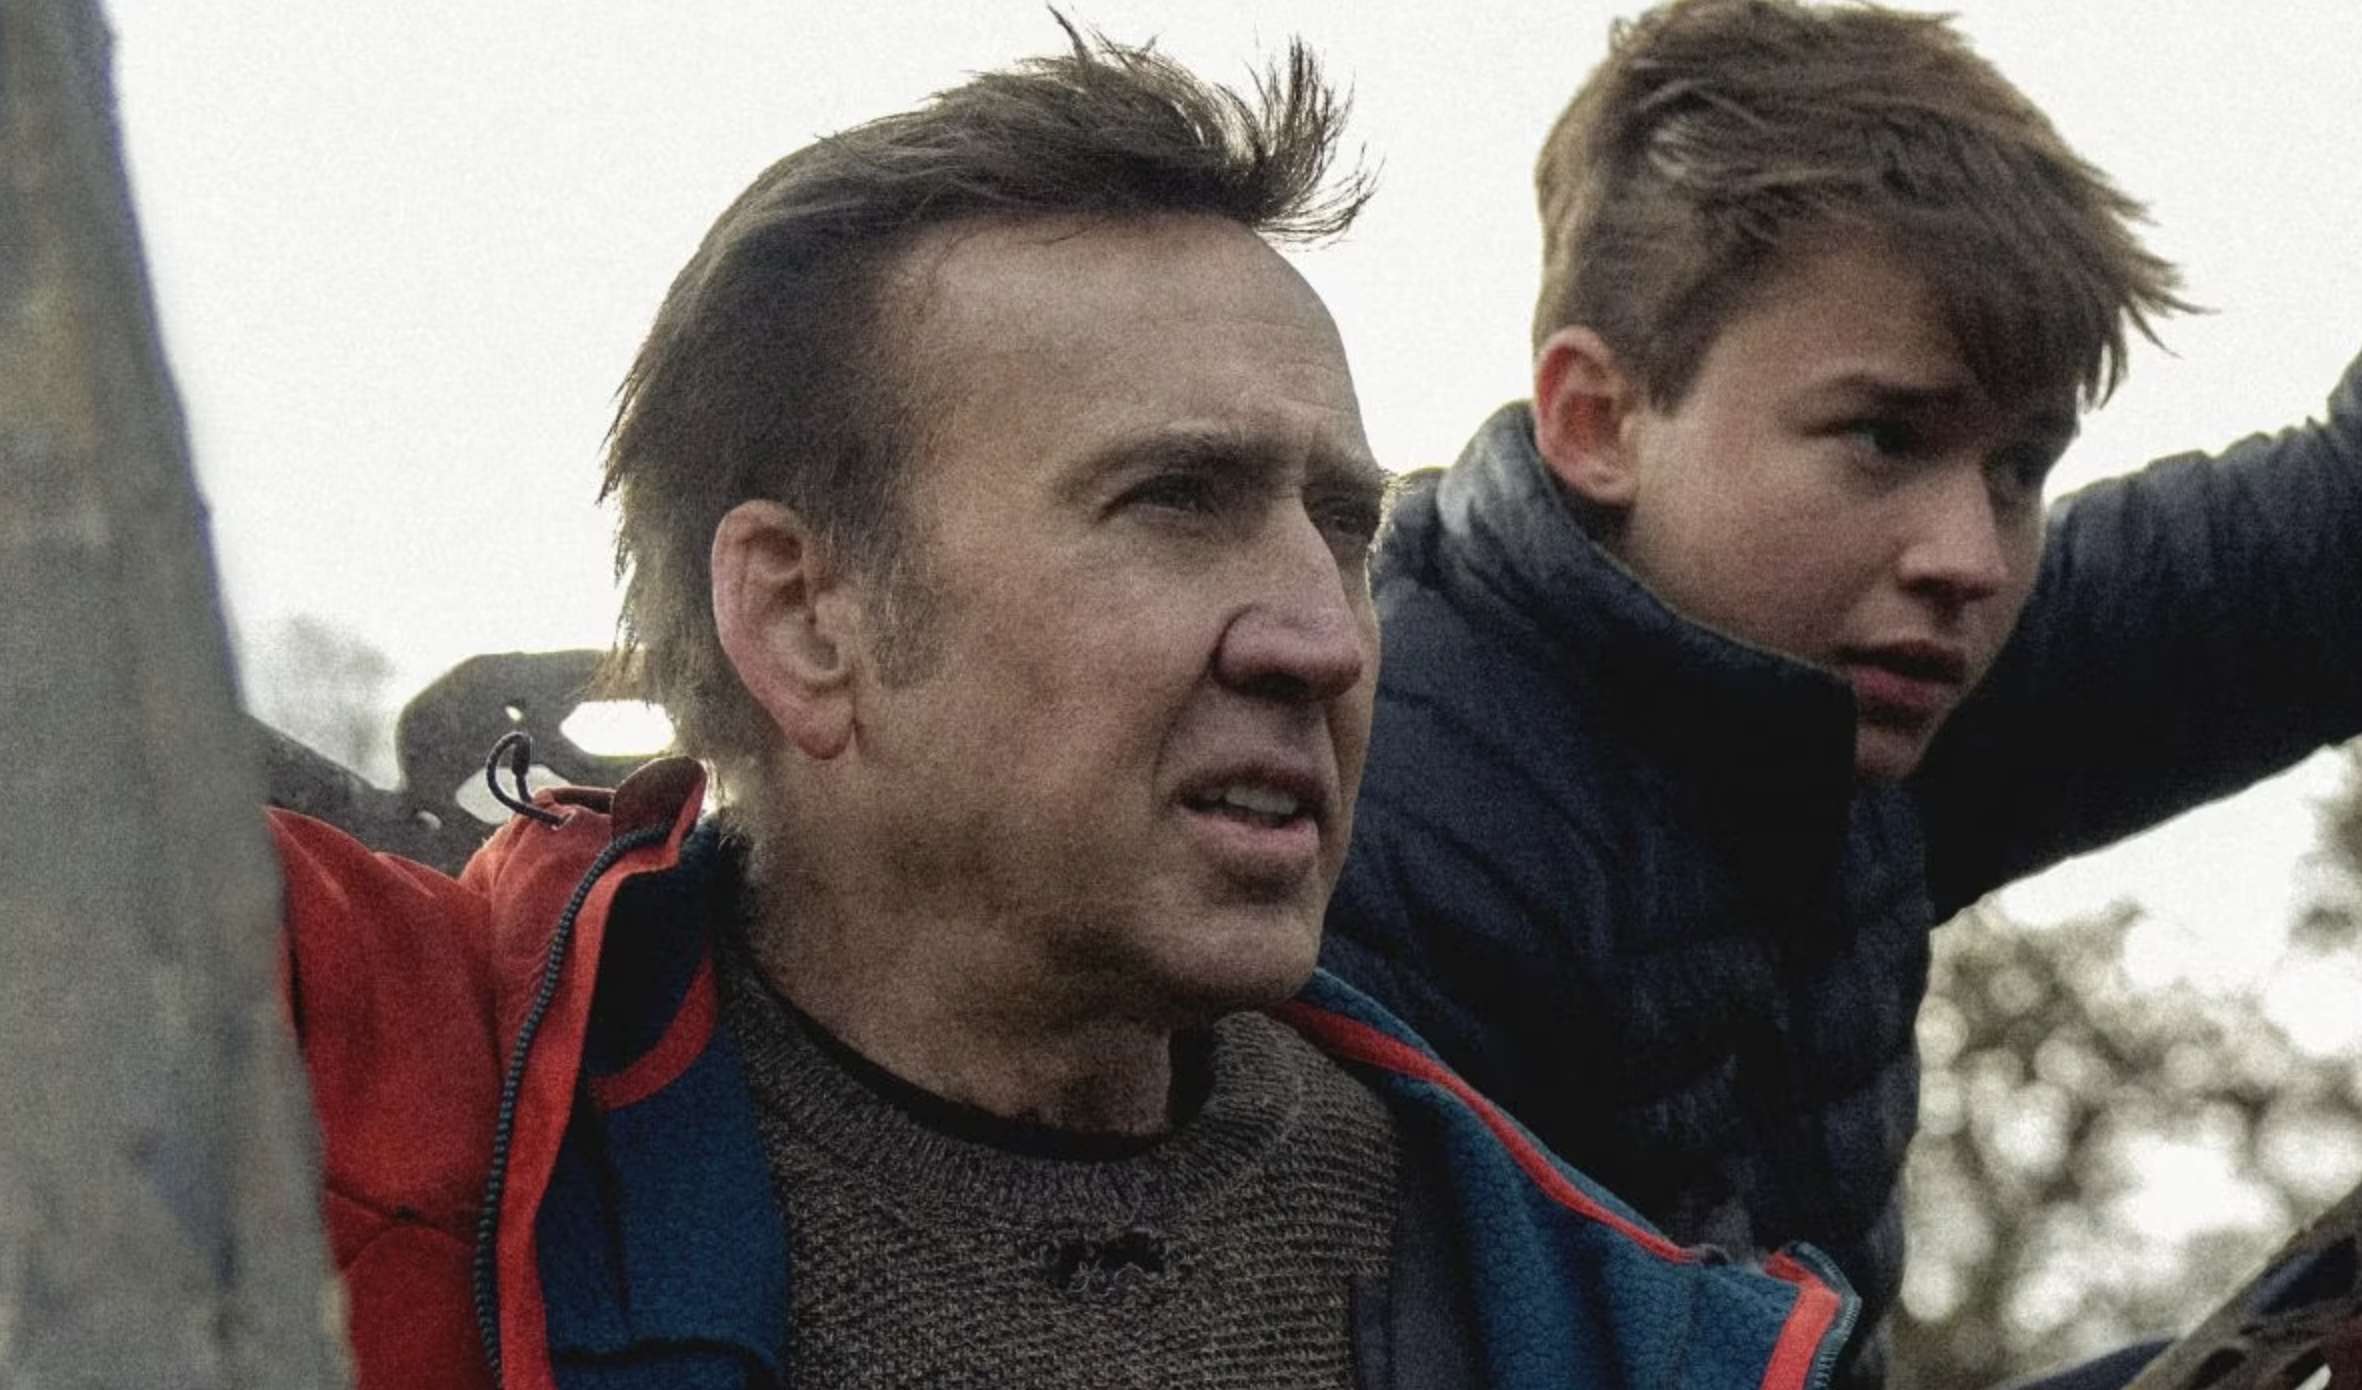 Nadchodzi ambitny film z Nicolasem Cagem. To będzie kinowy hit?